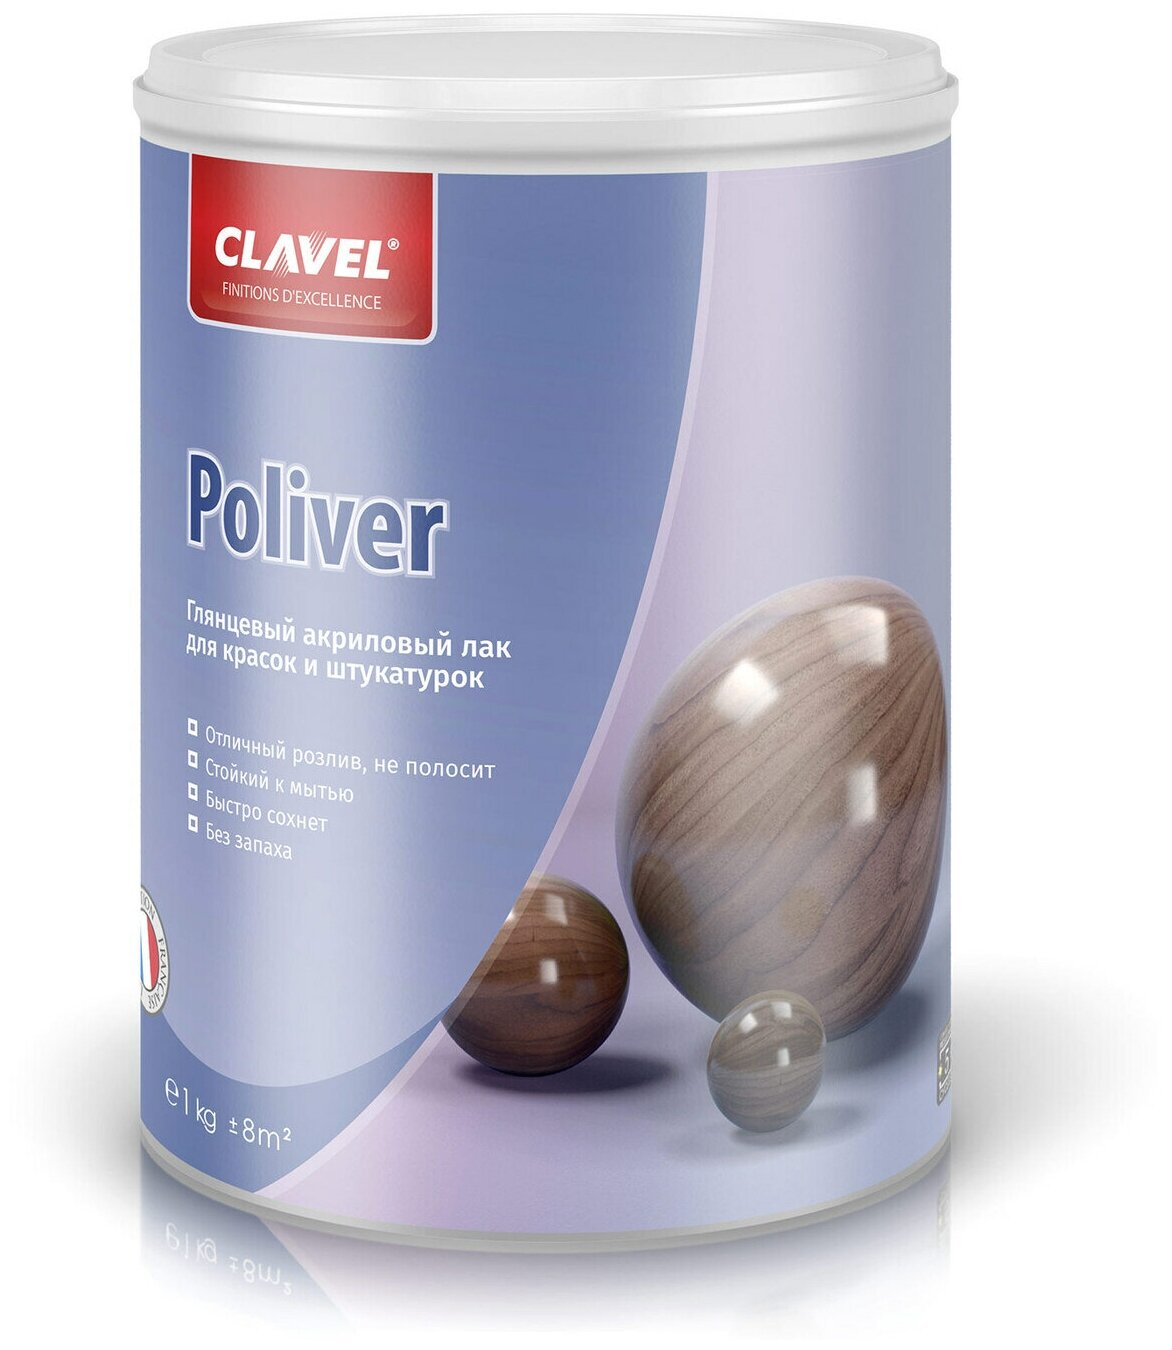 Глянцевый лак Clavel Poliver для красок и штукатурок, 1 кг, бесцветный